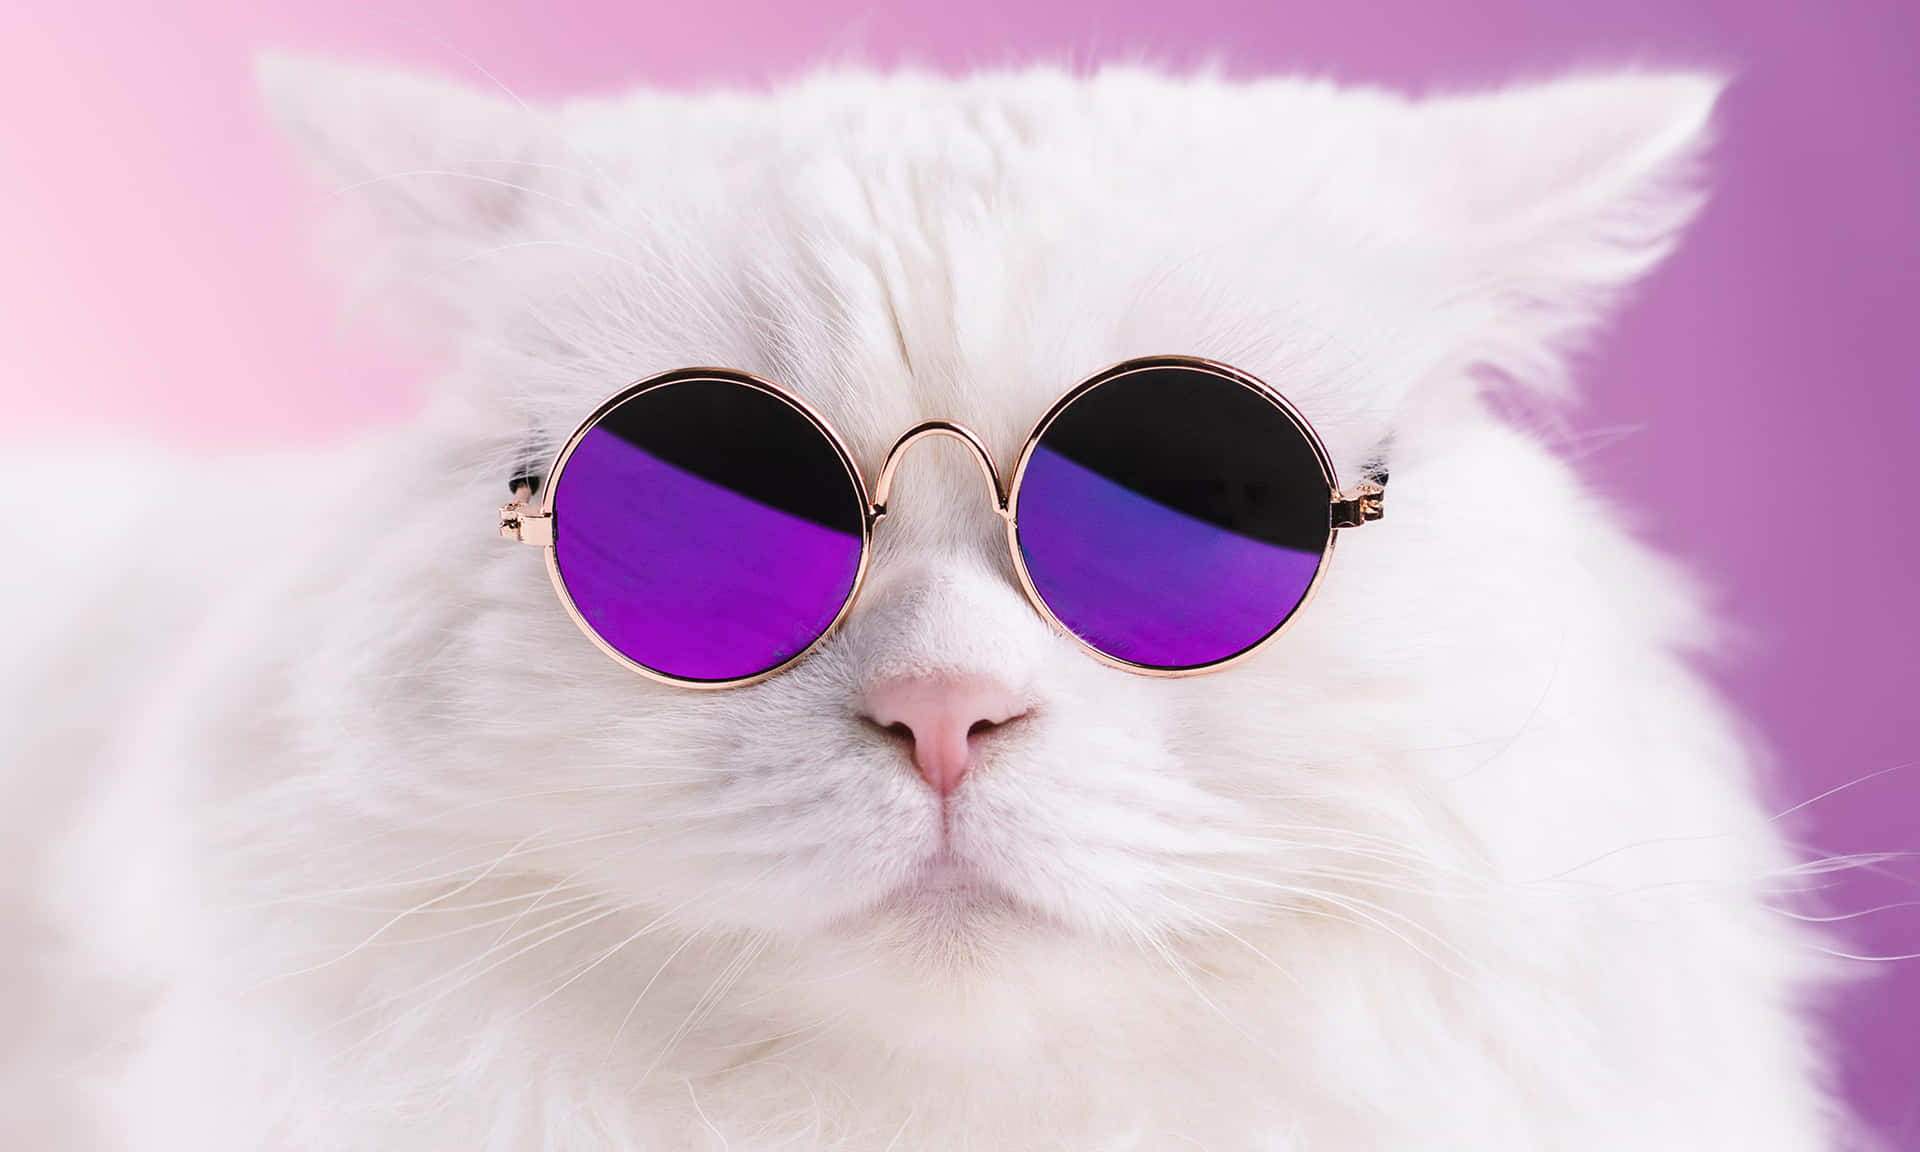 Memedivertenti Di Gatti, Immagine Di Un Gatto Bianco Con Occhiali Da Sole Viola